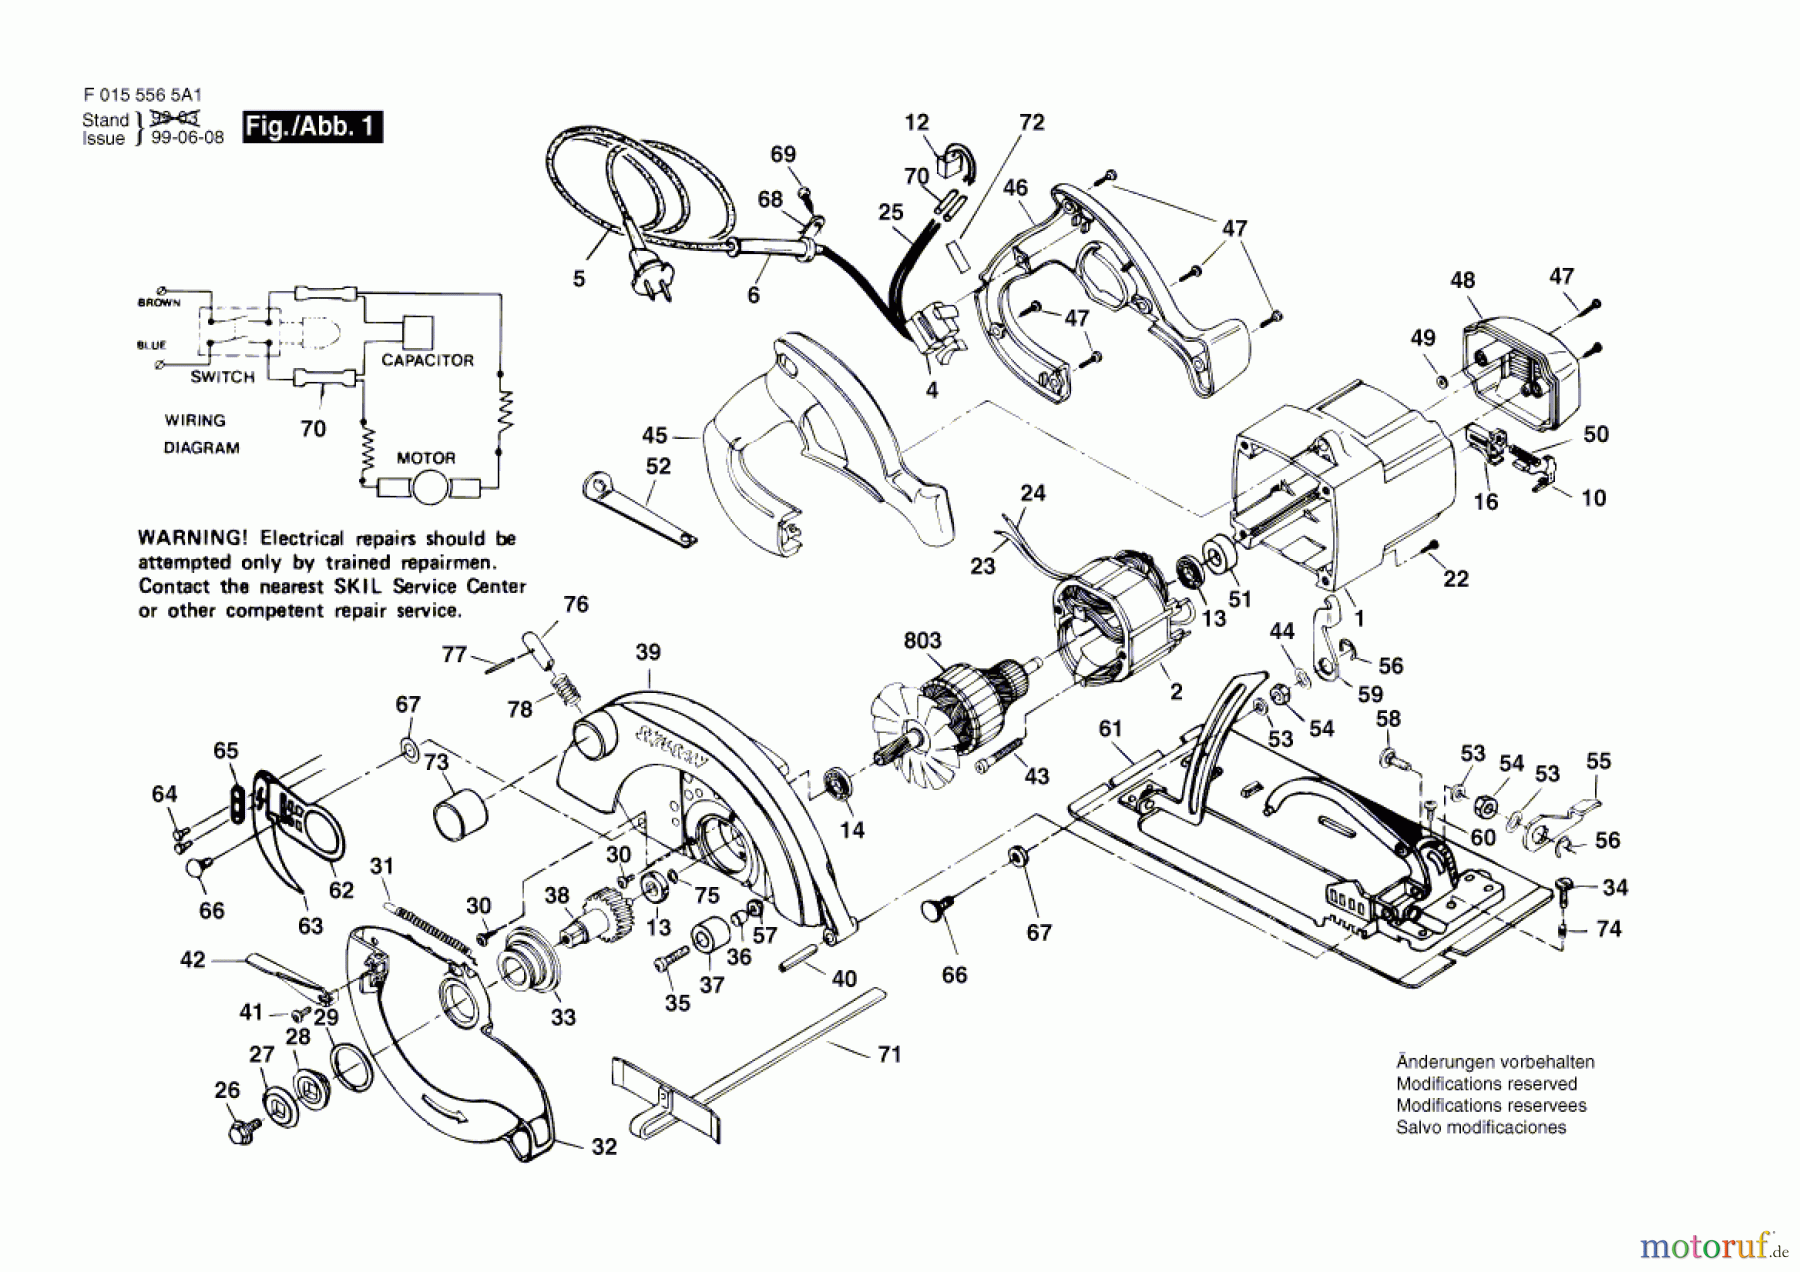  Bosch Werkzeug Kreissäge 5565 Seite 1